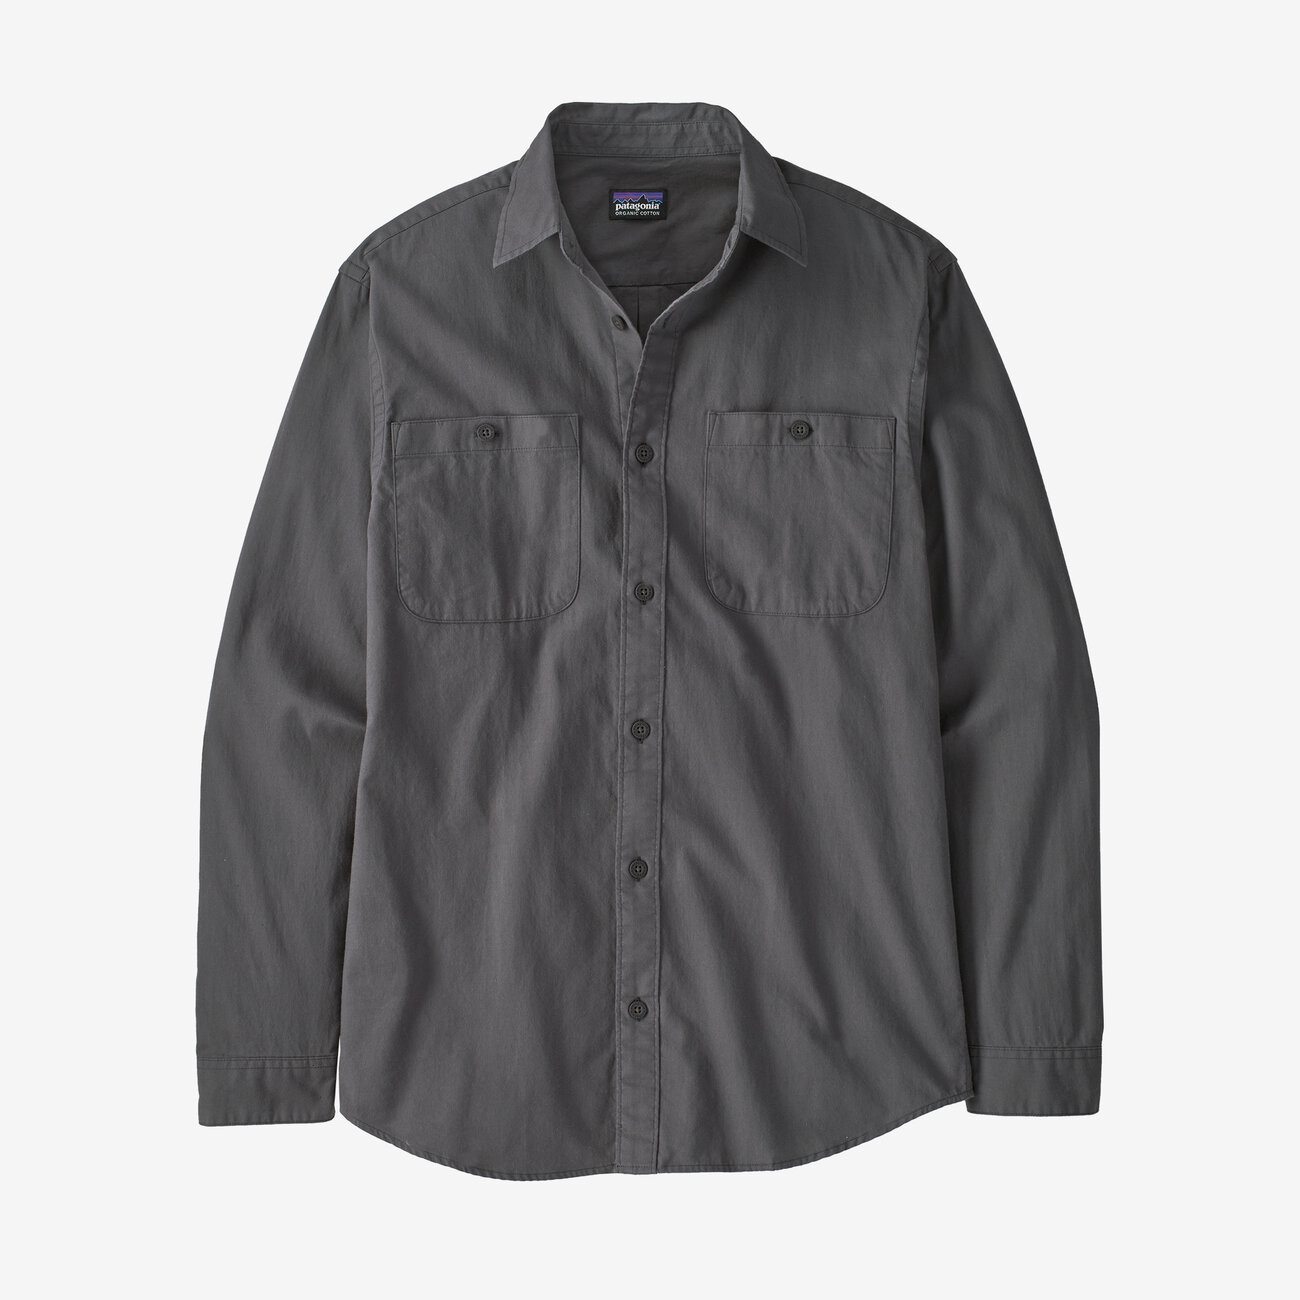 Patagonia M's L/S Pima Cotton Shirt - Paddler: Tailored Grey - Large